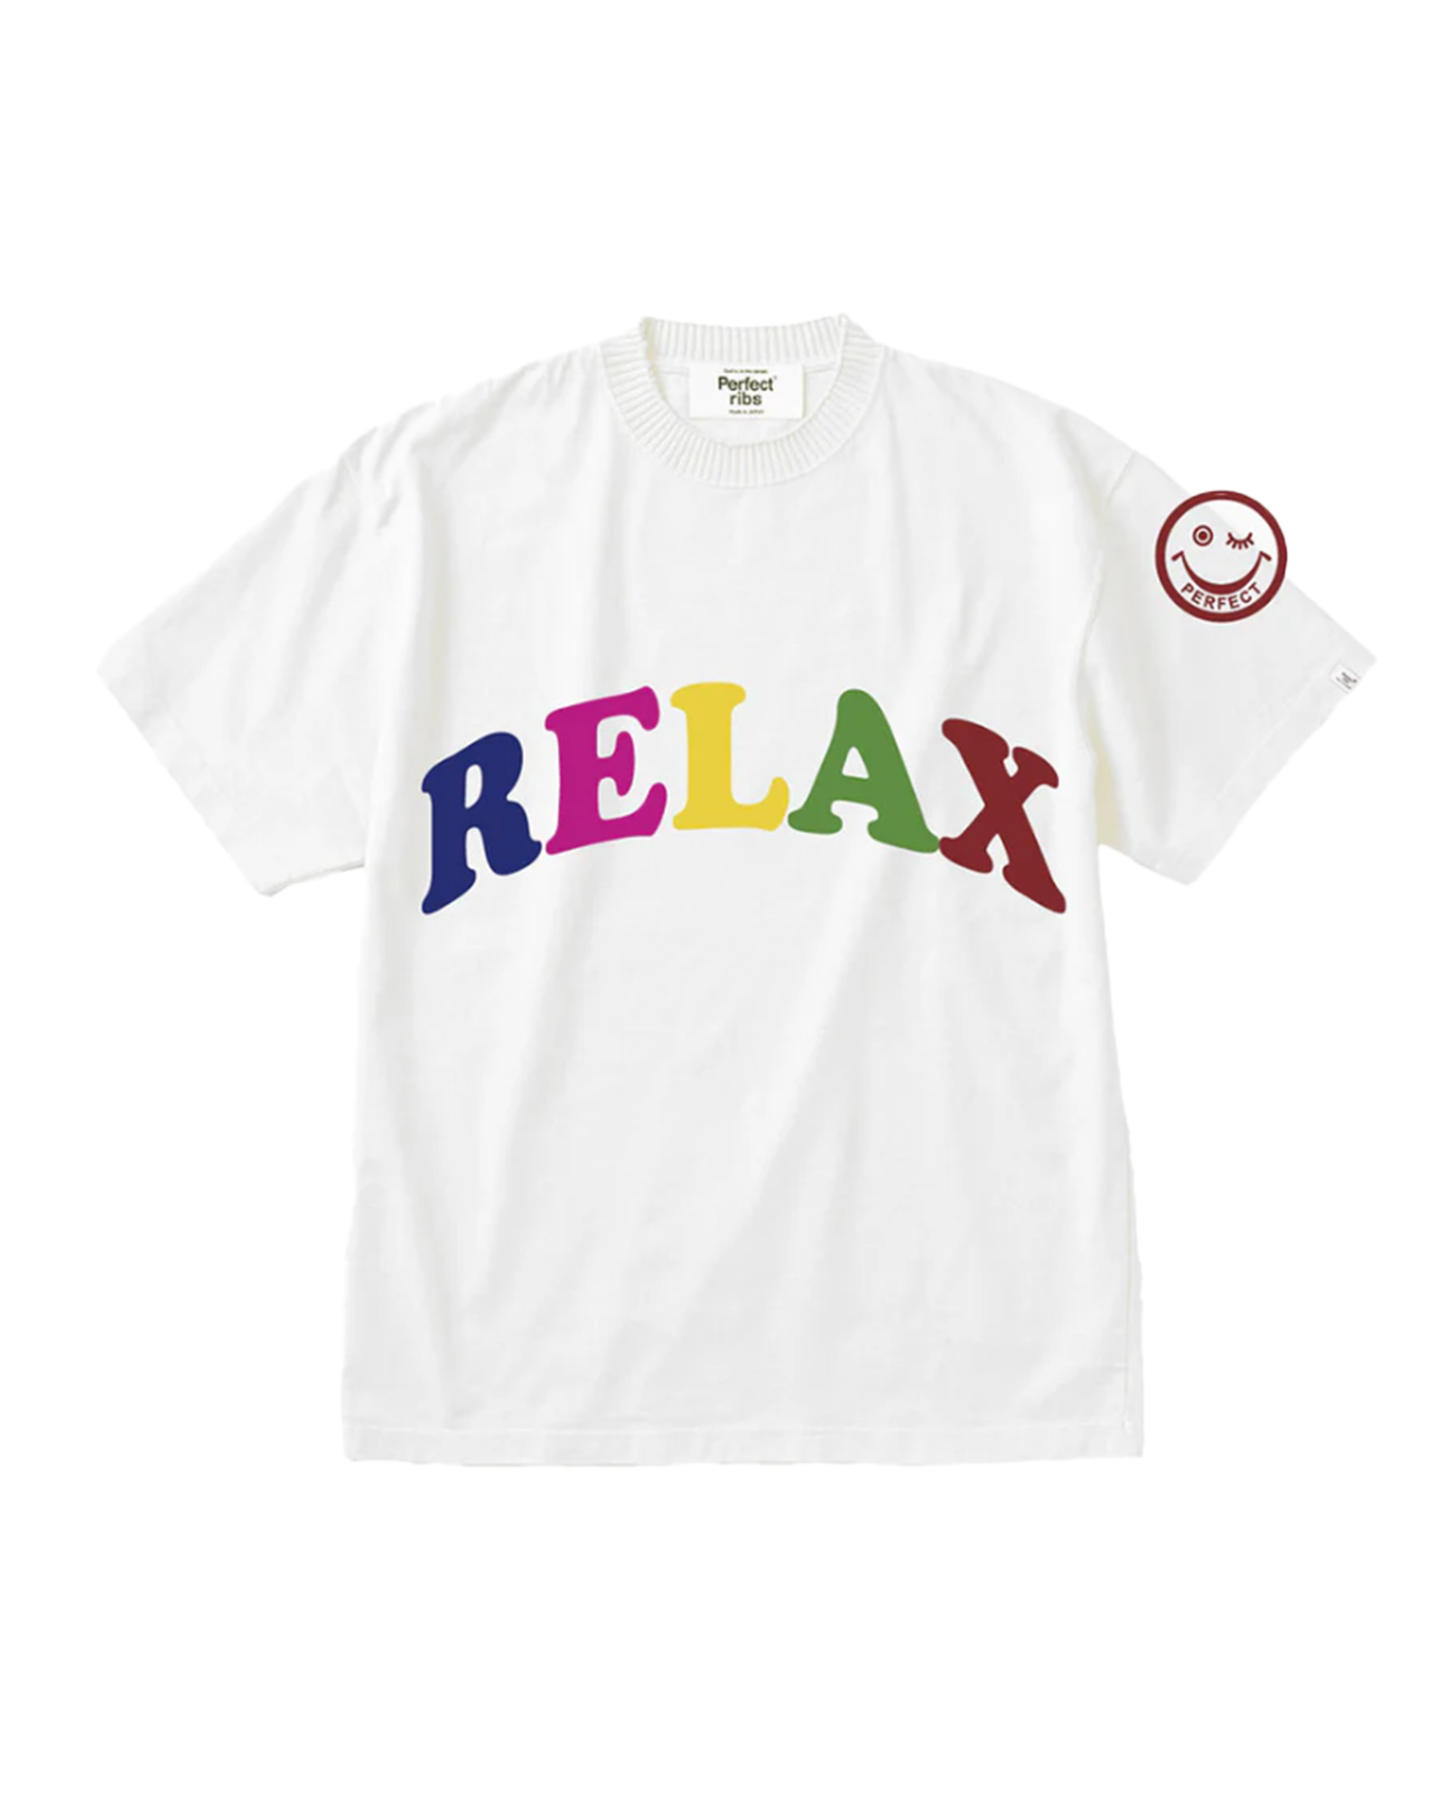 パーフェクトリブス/(RELAX & OPTIMIST) Basic Short Sleeve T Shirts/Tシャツ/White